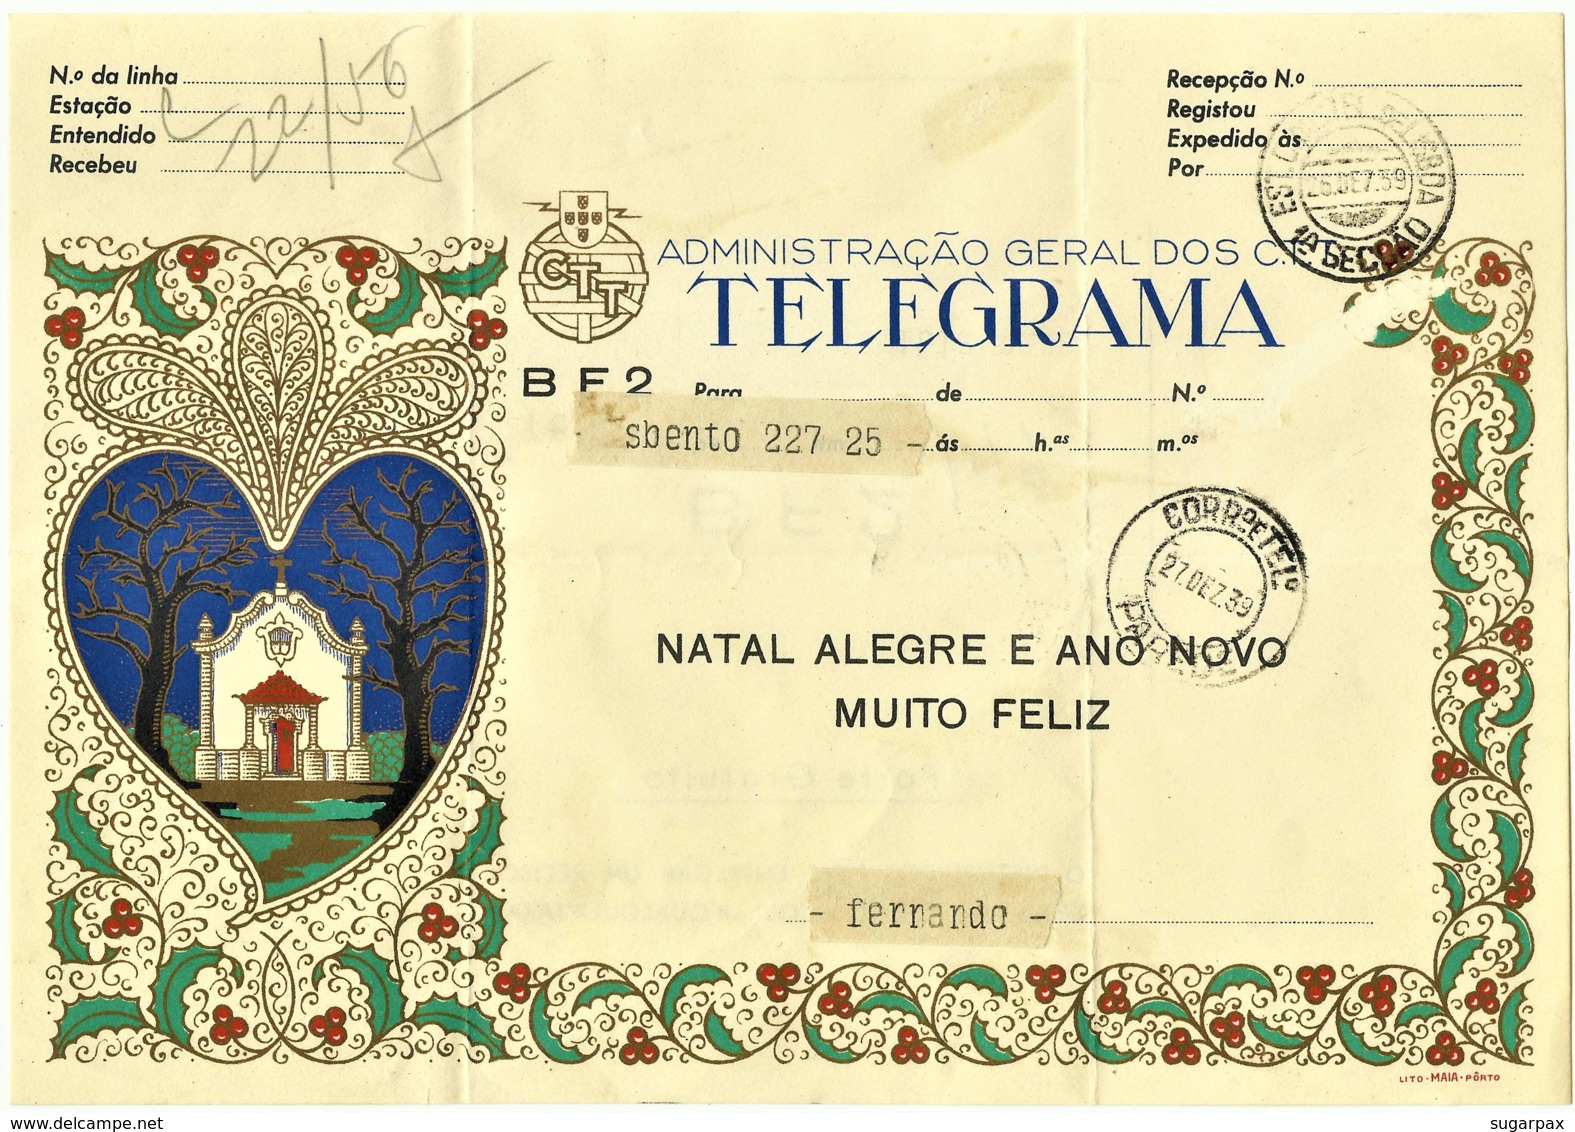 BF2 - 1959 - TELEGRAMA - Administração Geral Dos C.T.T. - NATAL ALEGRE E ANO NOVO MUITO FELIZ - Portugal - Cartas & Documentos